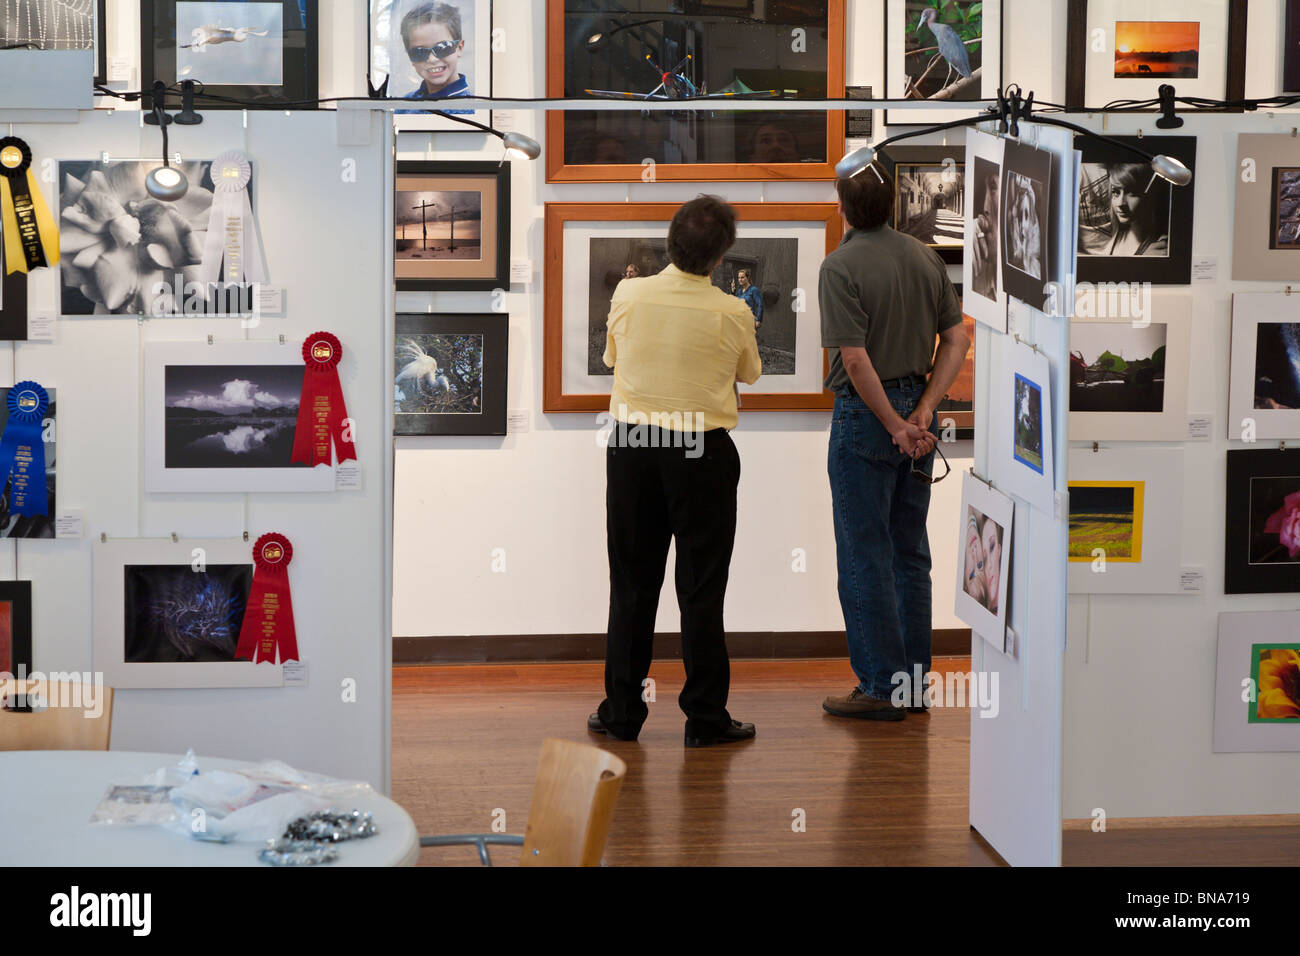 Les visiteurs d'une galerie d'art étude une exposition photographique à Brick City Center for the Arts, au centre-ville d'Ocala, Floride Banque D'Images